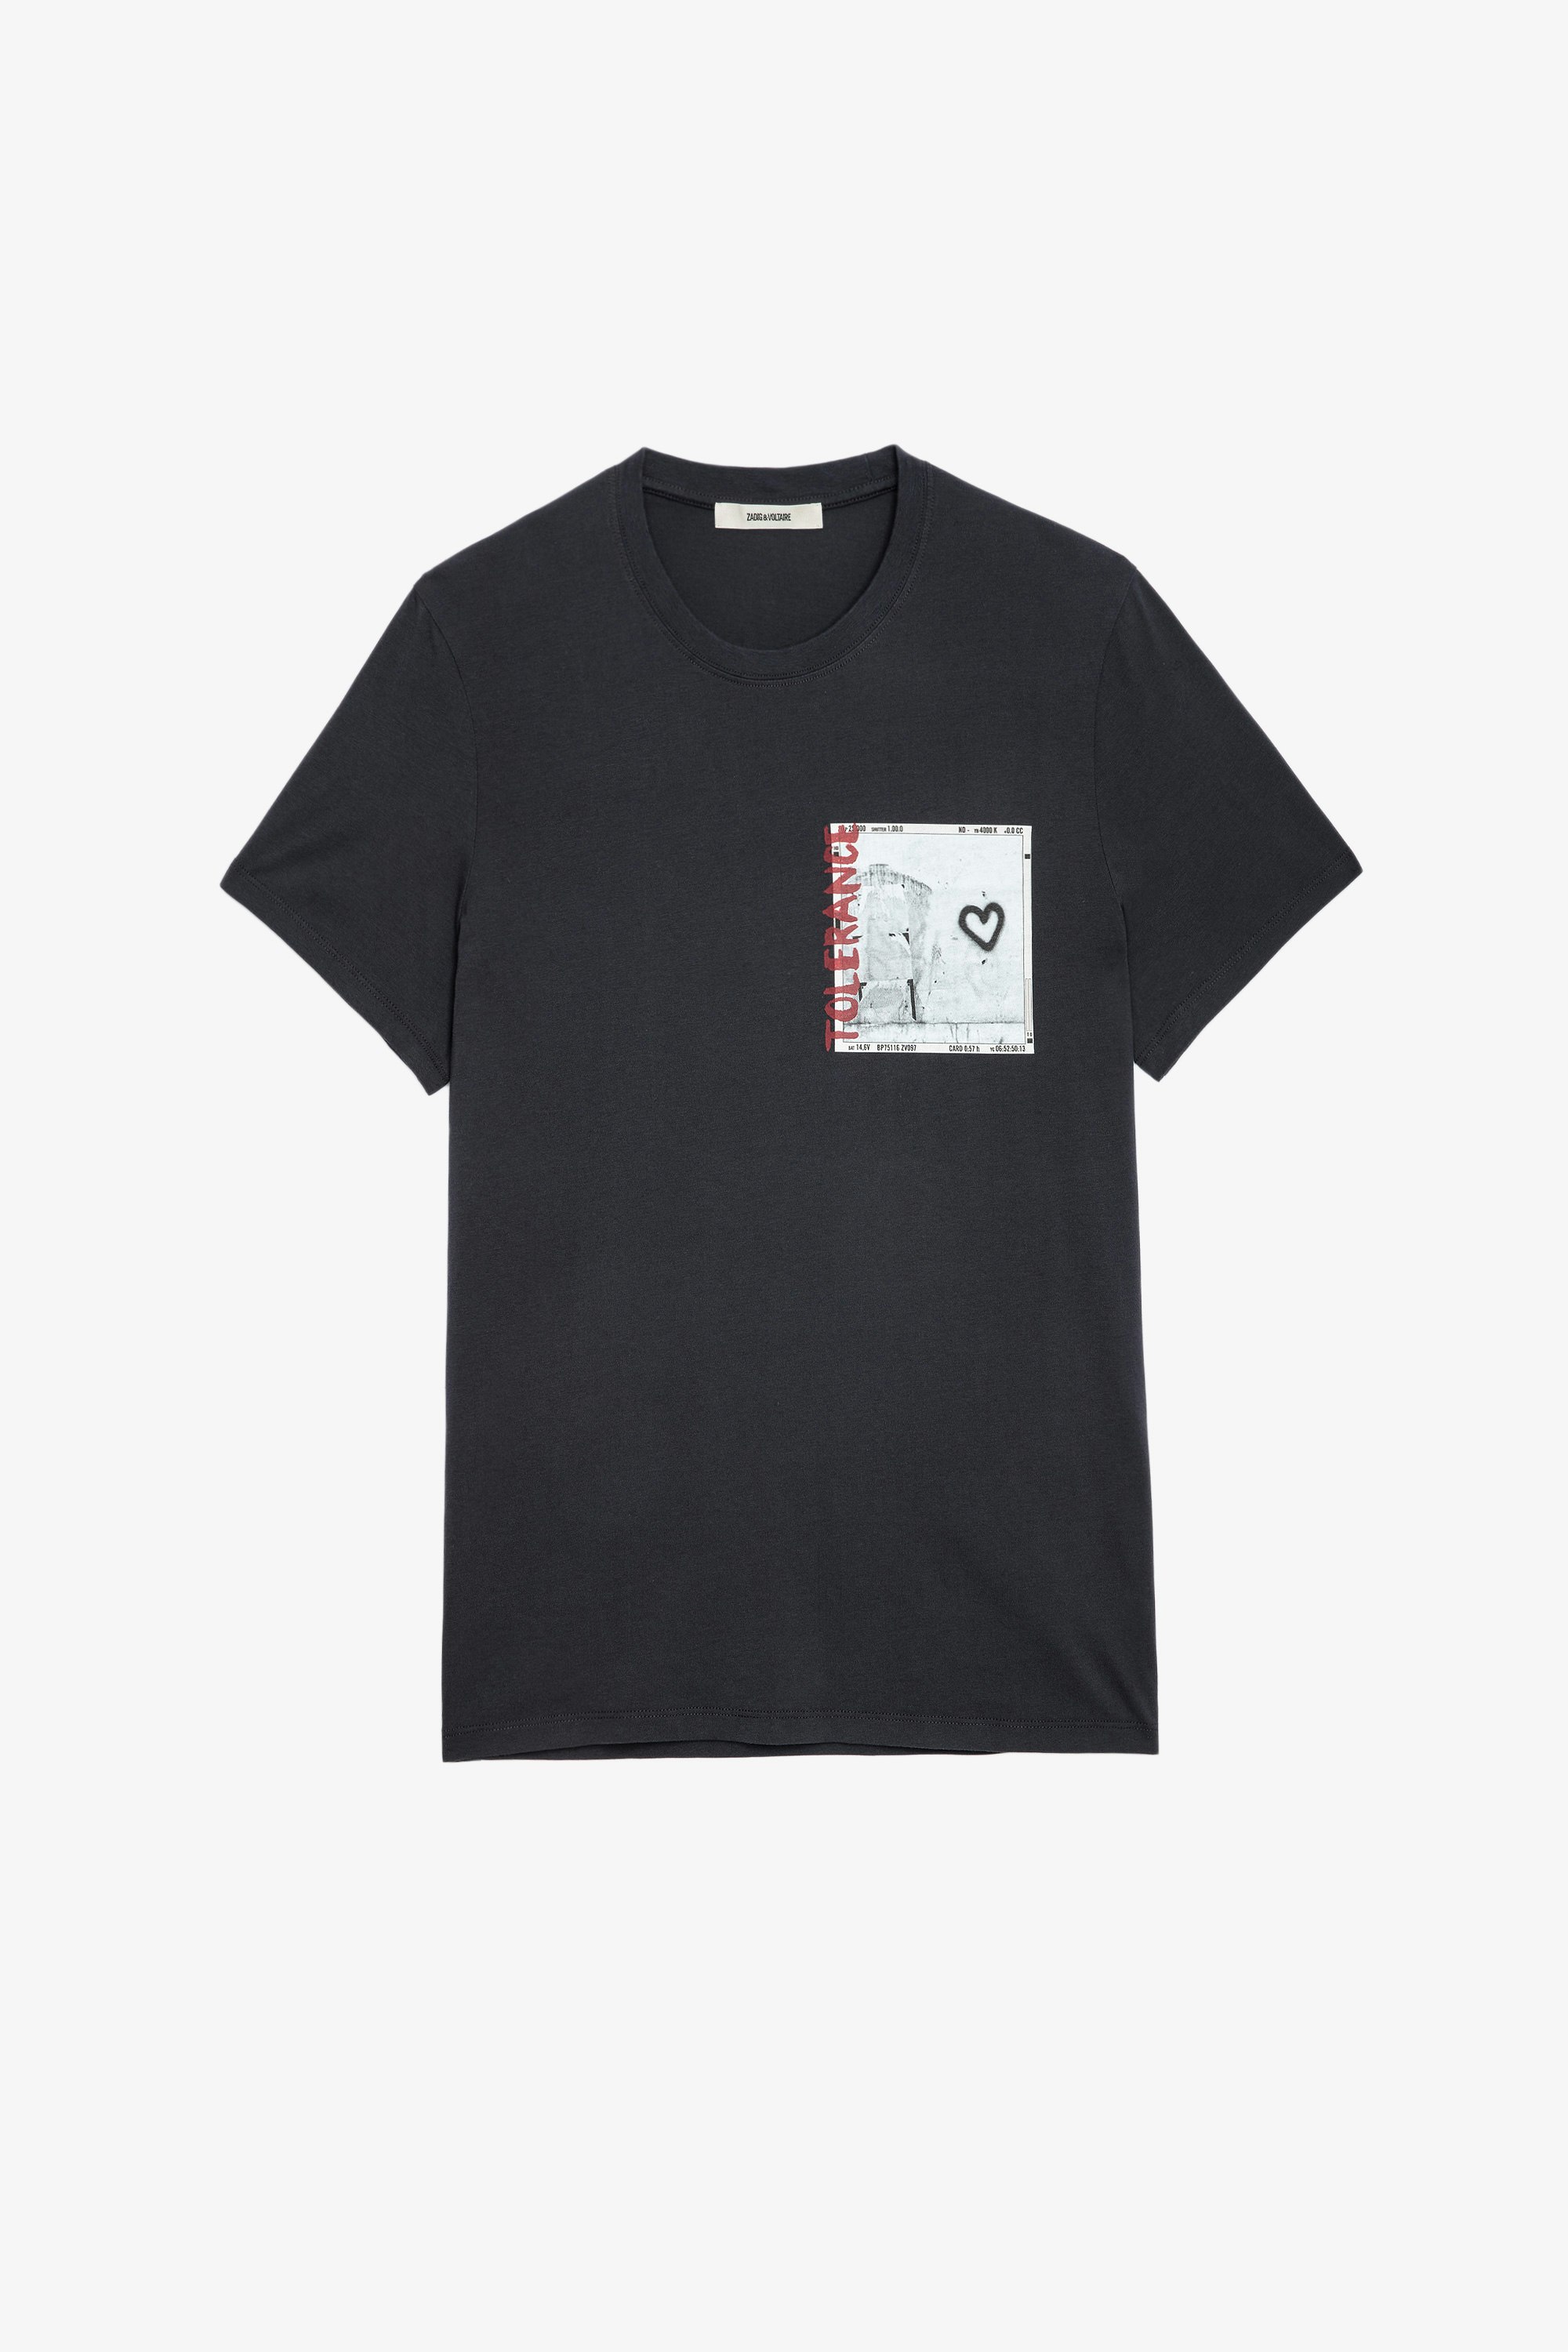 T-shirt Ted Photoprint T-shirt in cotone grigio antracite con stampa fotografica uomo